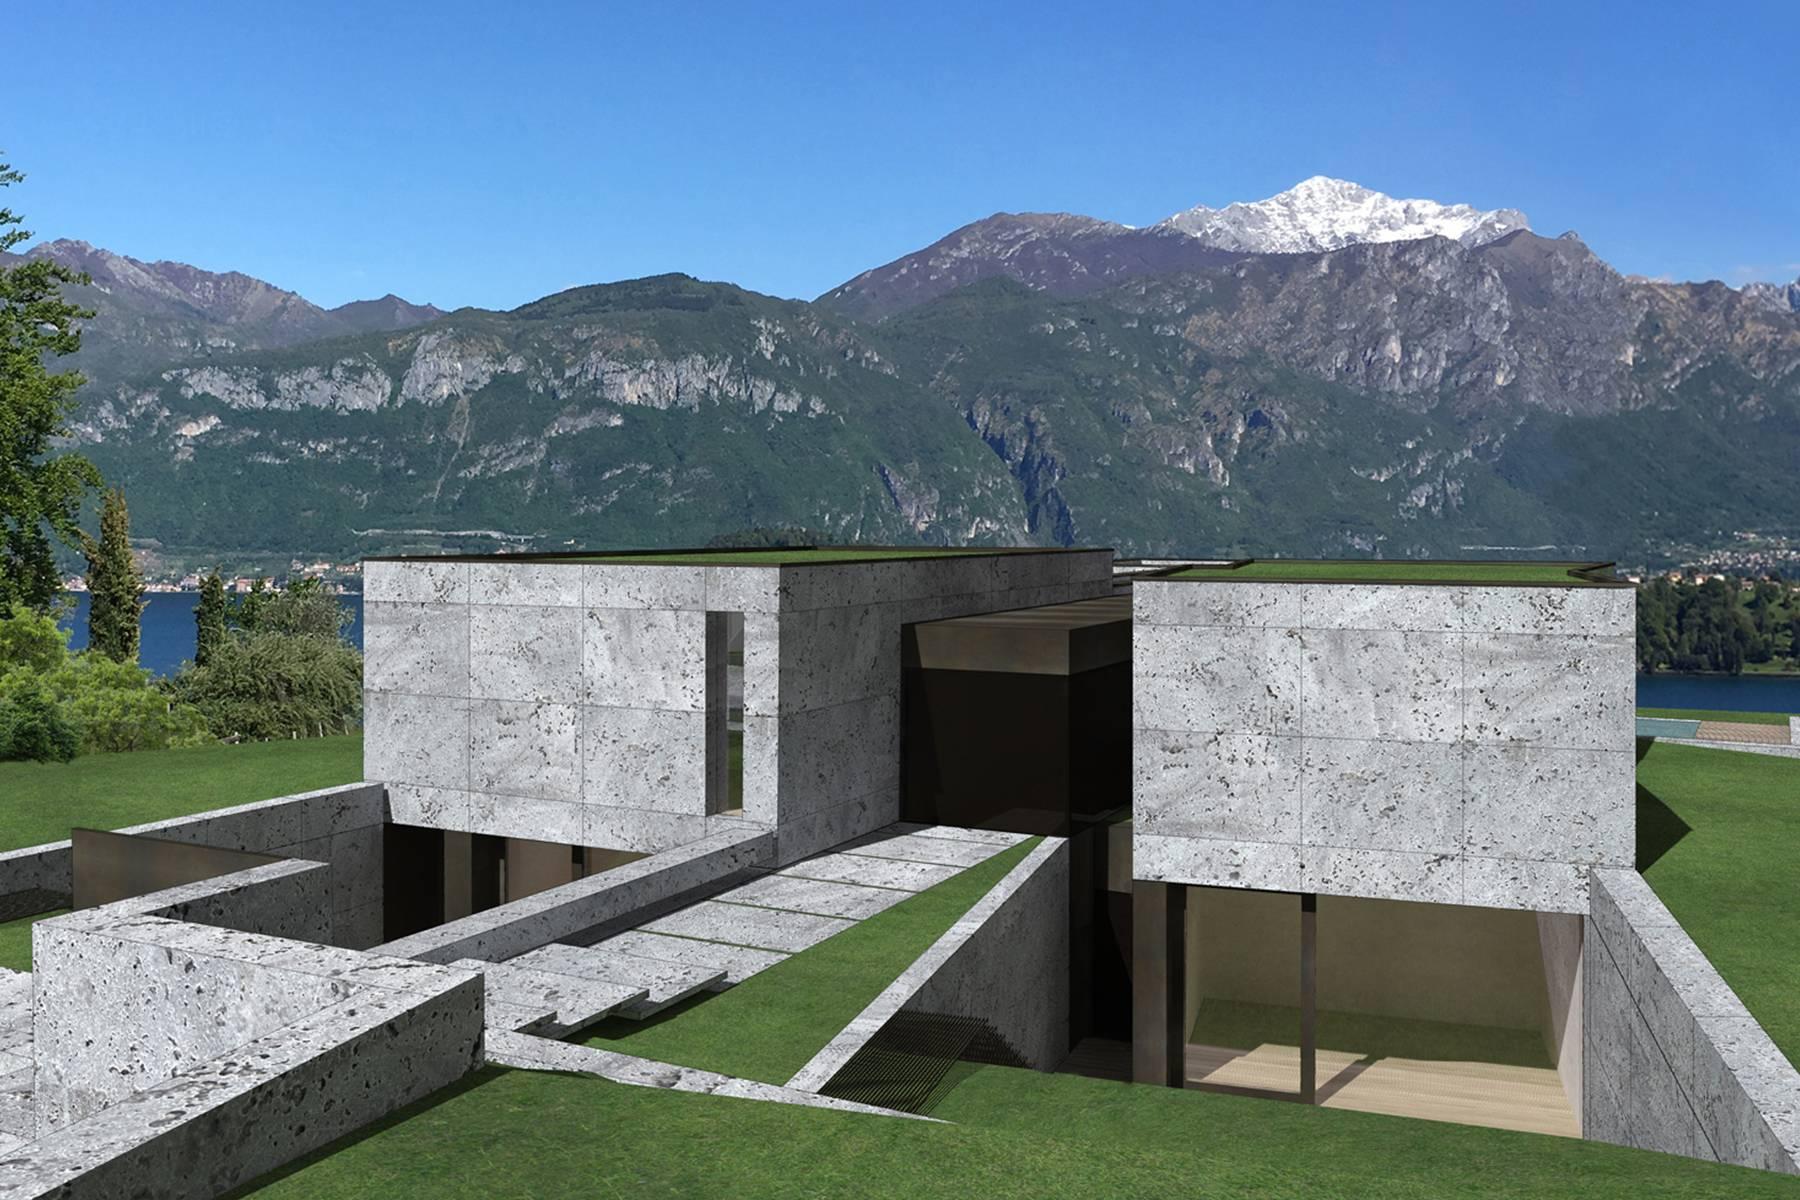 Villa in stile hollywoodiano con vista sul lago di Como da una posizione panoramica e dominante - 7